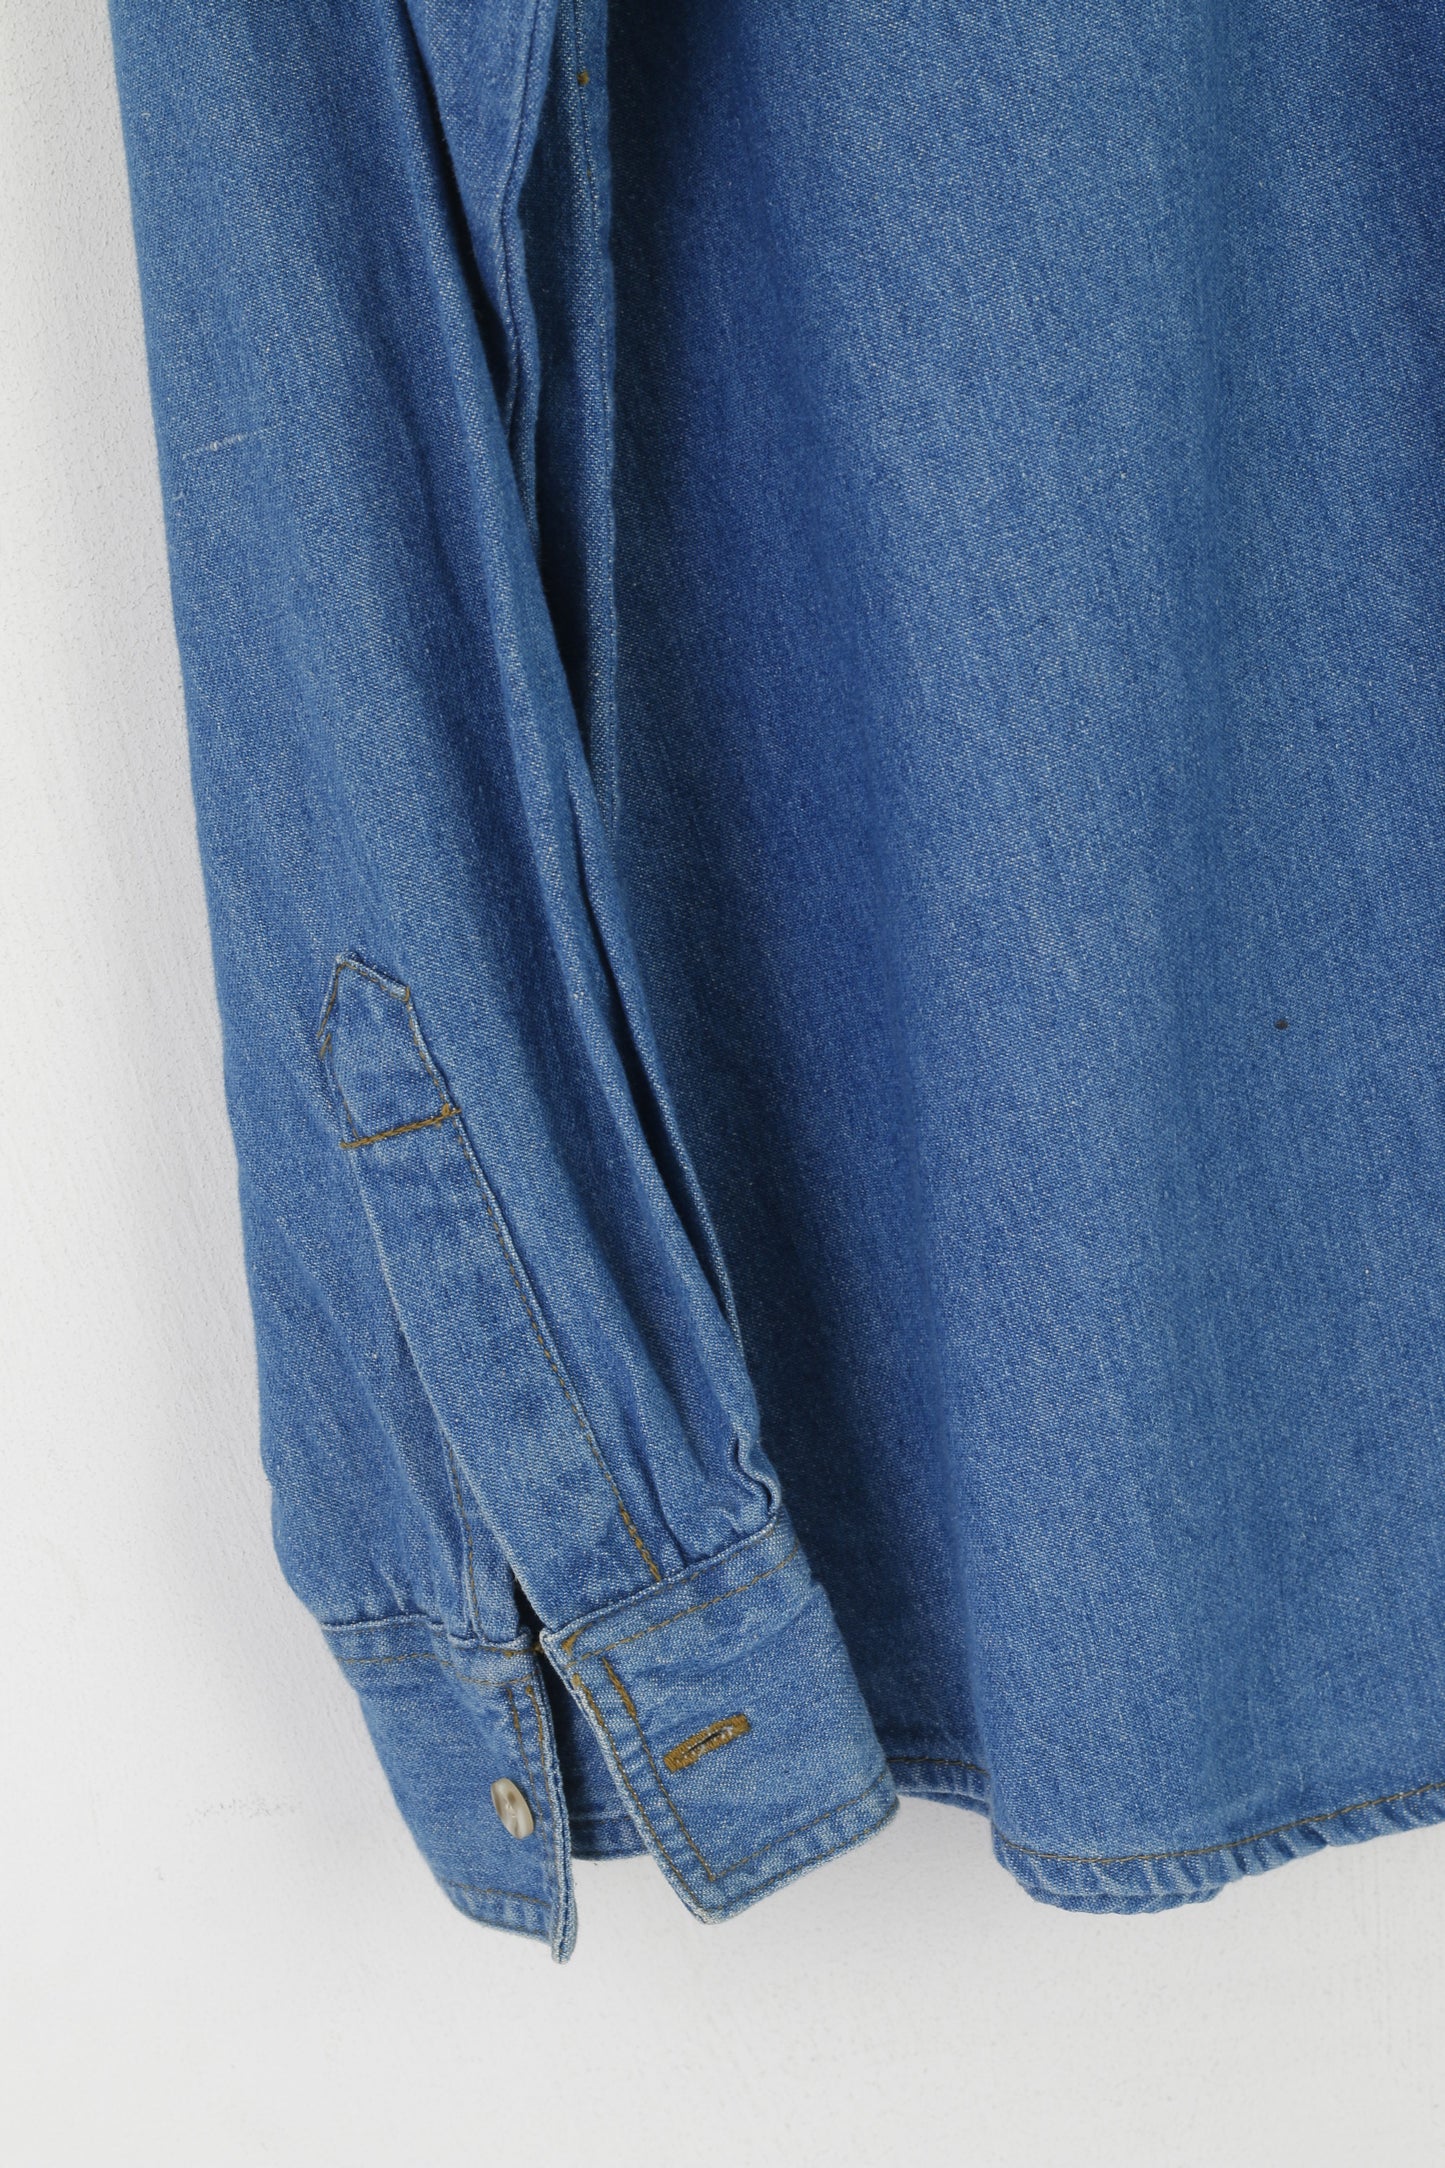 Hardwear Hommes M Chemise décontractée Bleu Vintage Jeans Denim Coton Angleterre Haut à manches longues